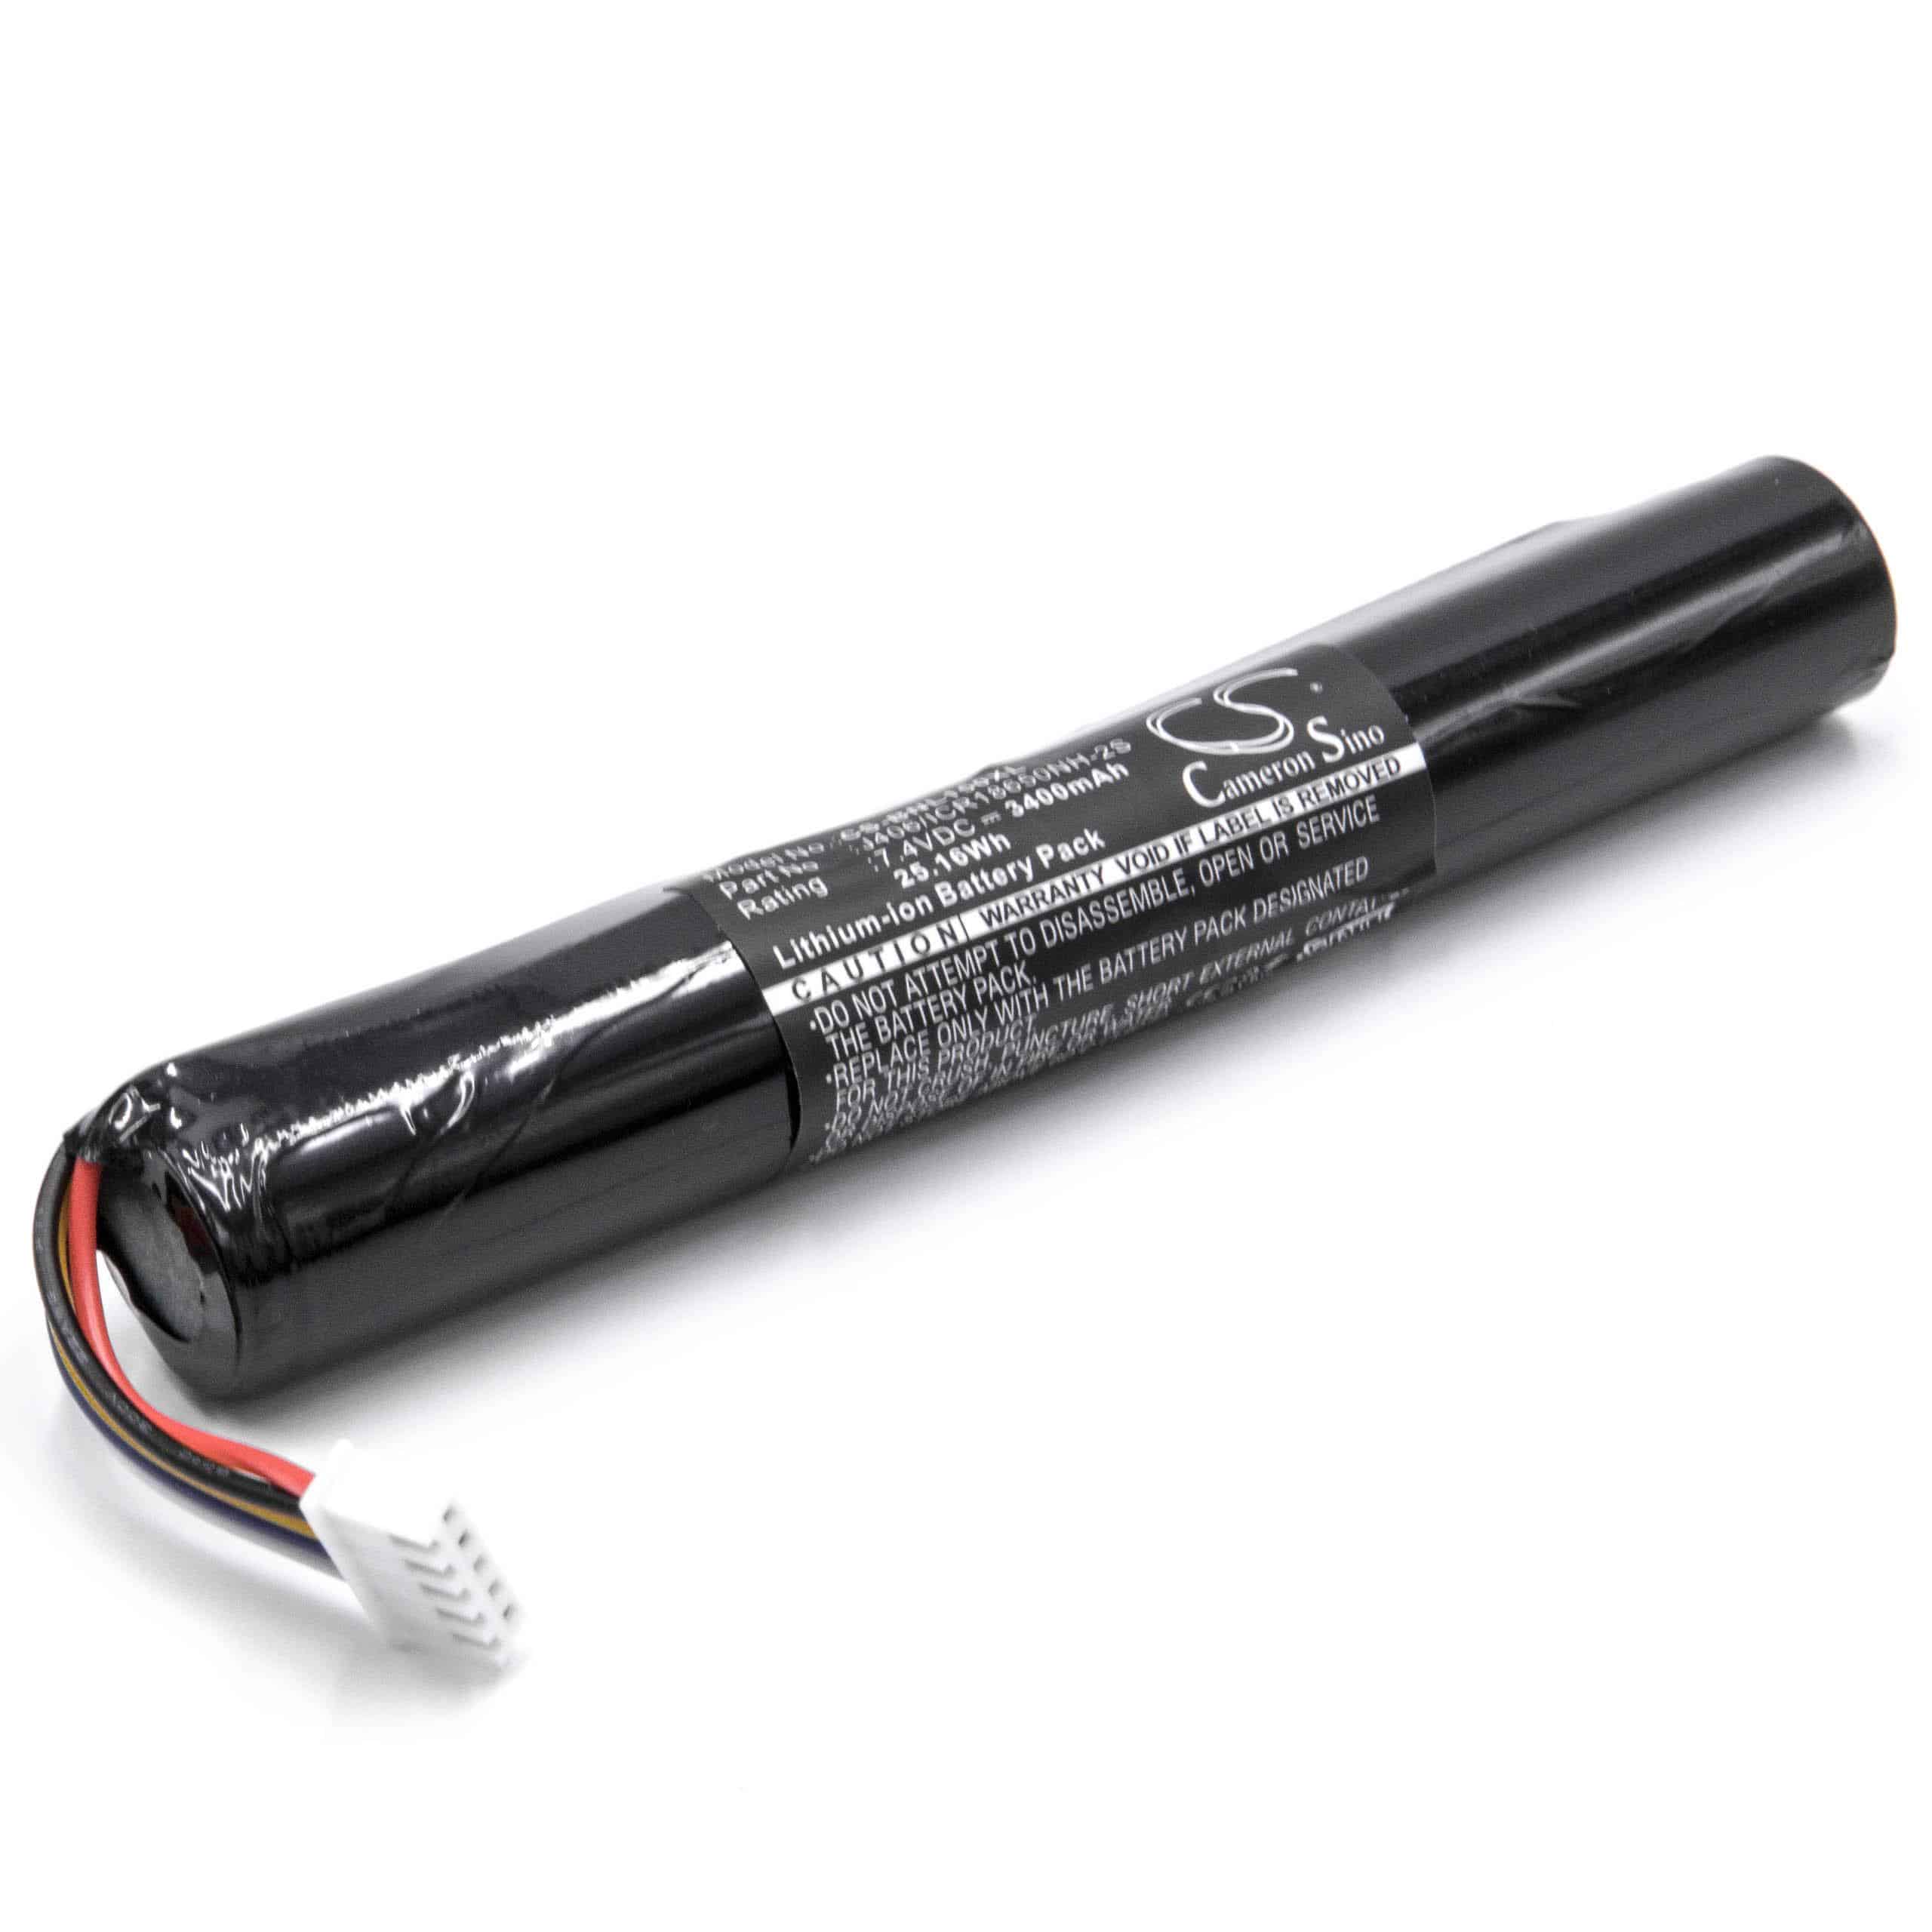 Batterie remplace Bang & Olufsen J406/ICR18650NH-2S pour enceinte Bang & Olufsen - 3400mAh 7,4V Li-ion